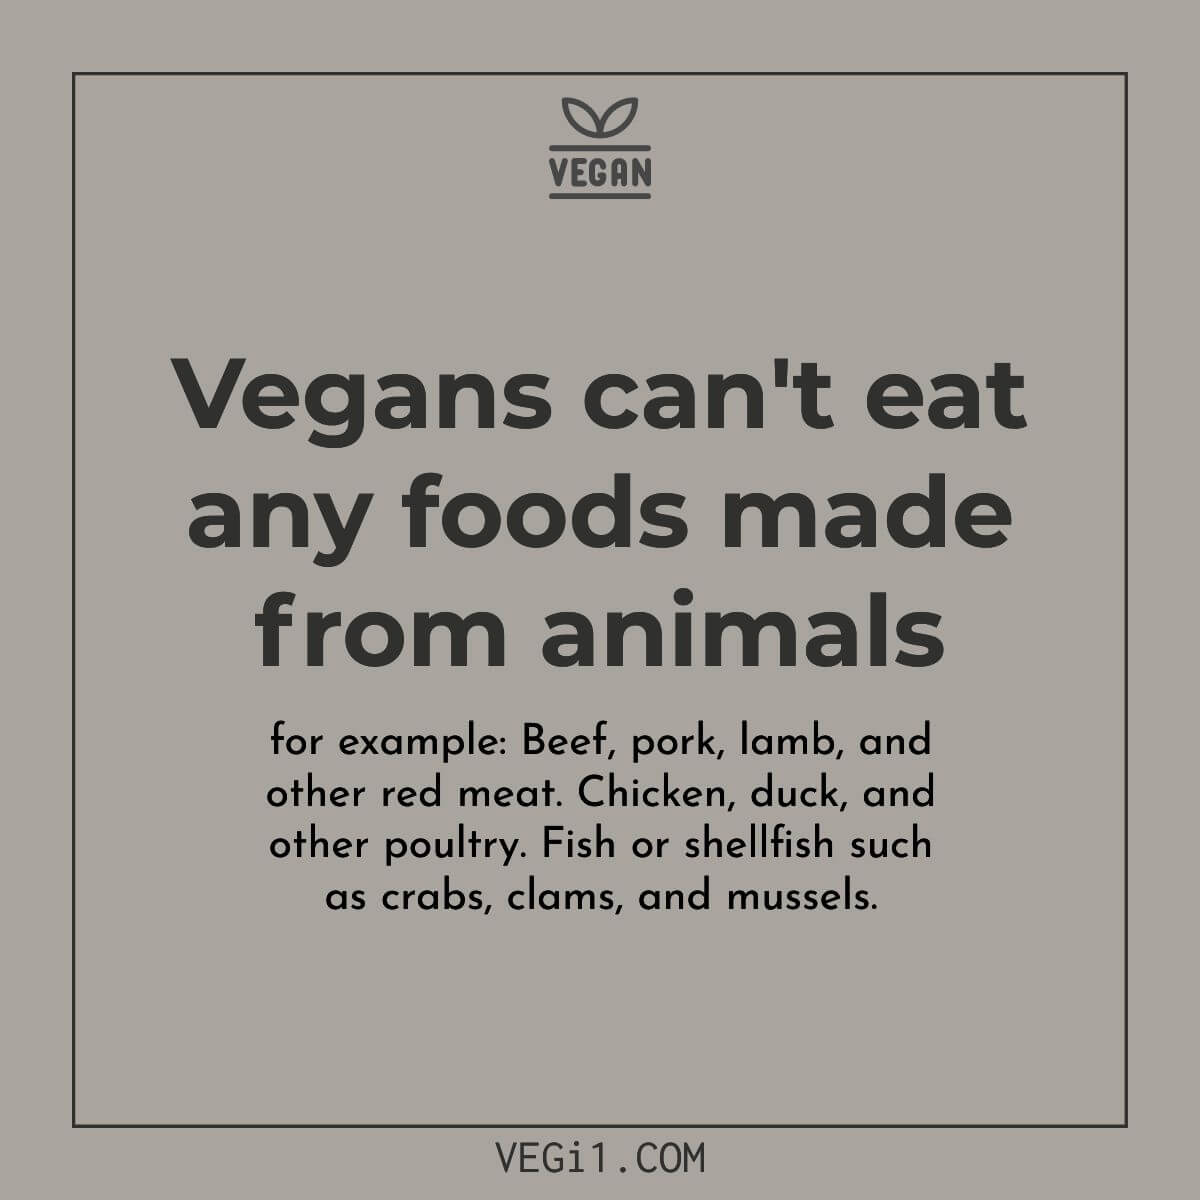 Vegans do not eat meat